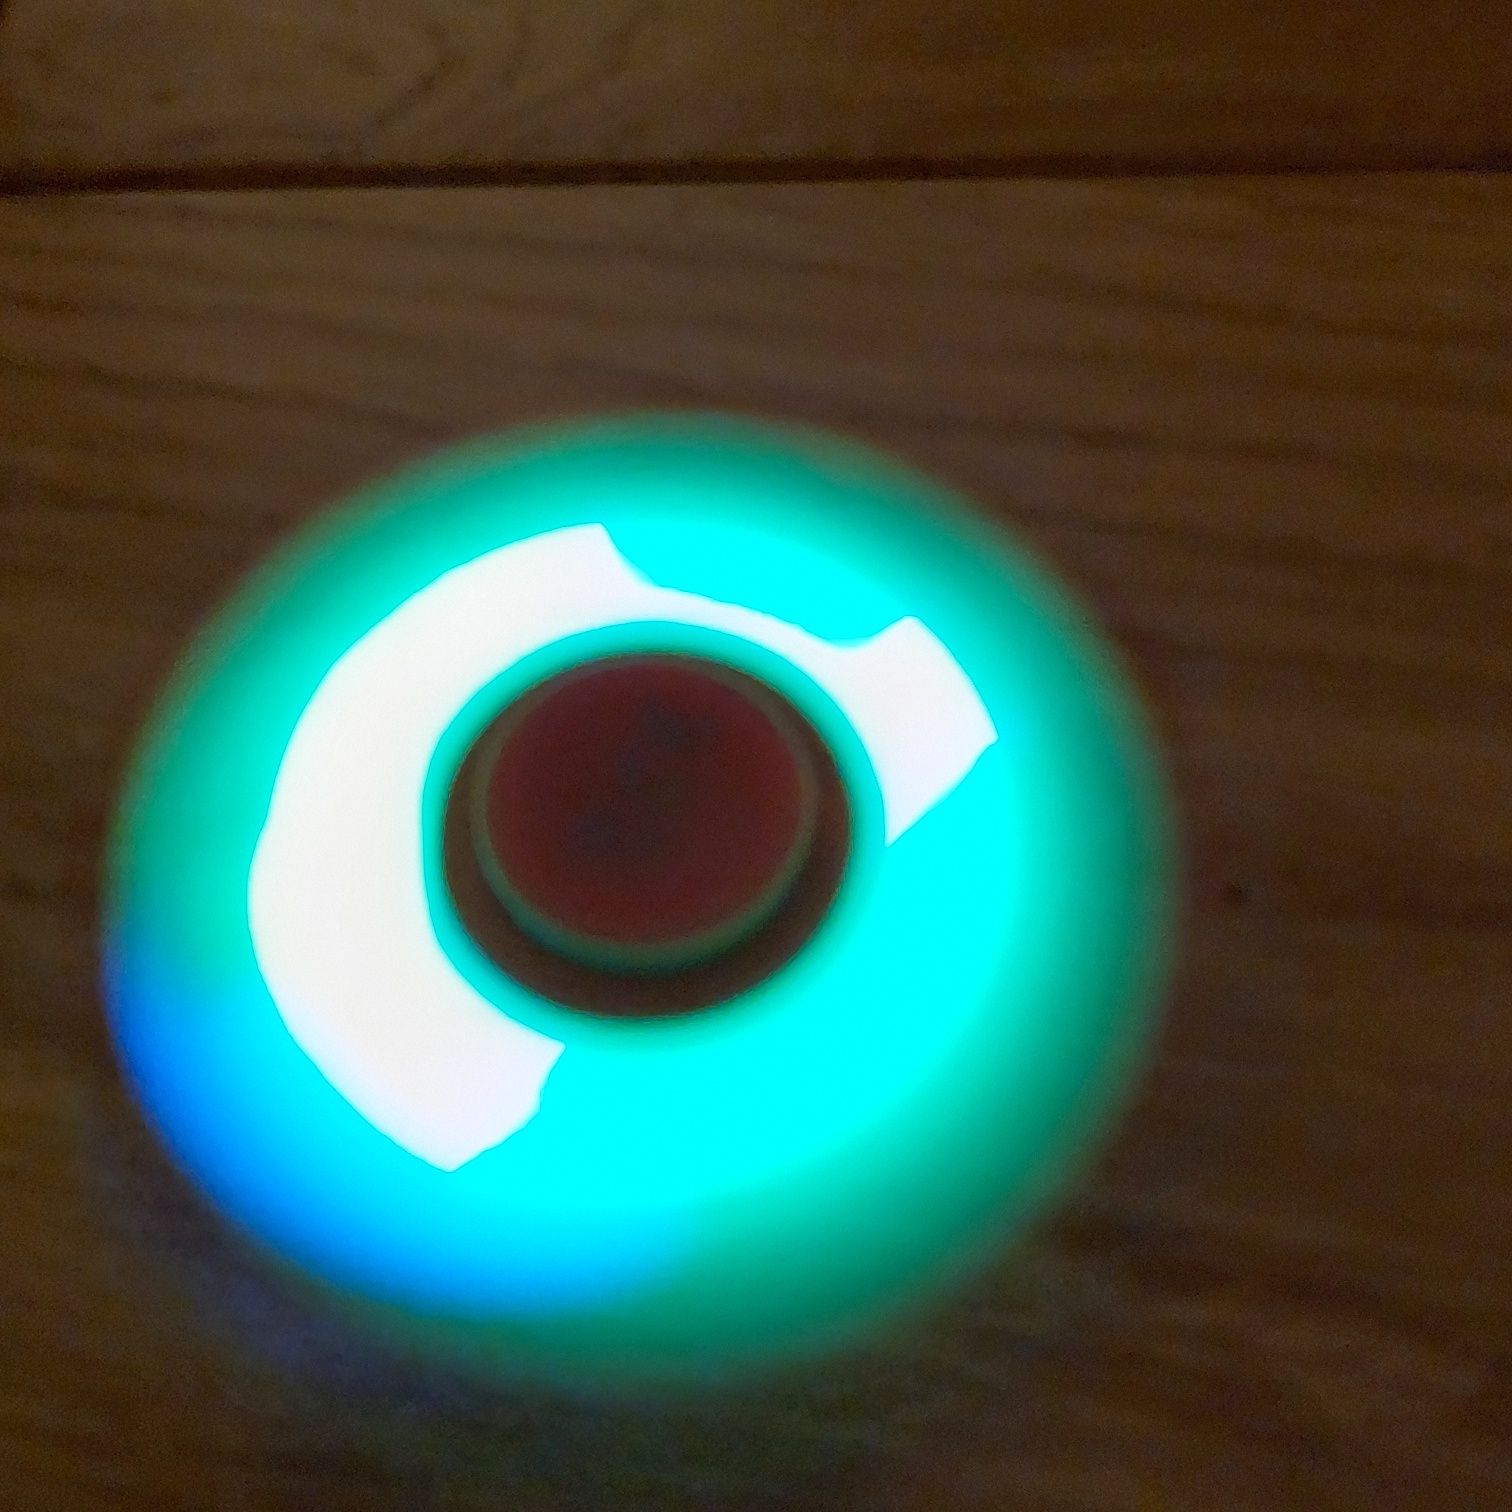 LED Hand Spinner (czerwony) - Zabawka antystresowa